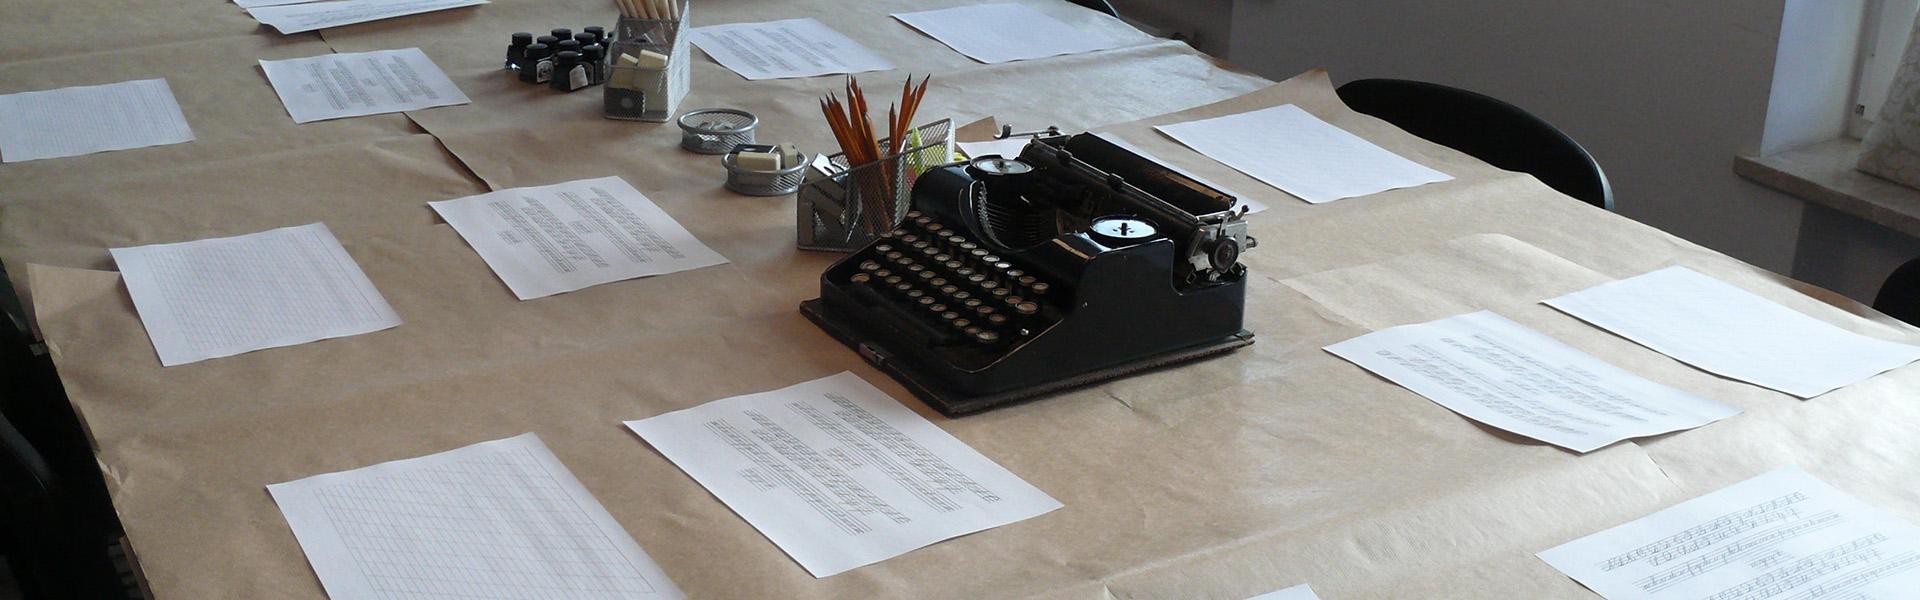 Tusz kaligraficzny, maszyna do pisania i ołówki na stole Slajd #2